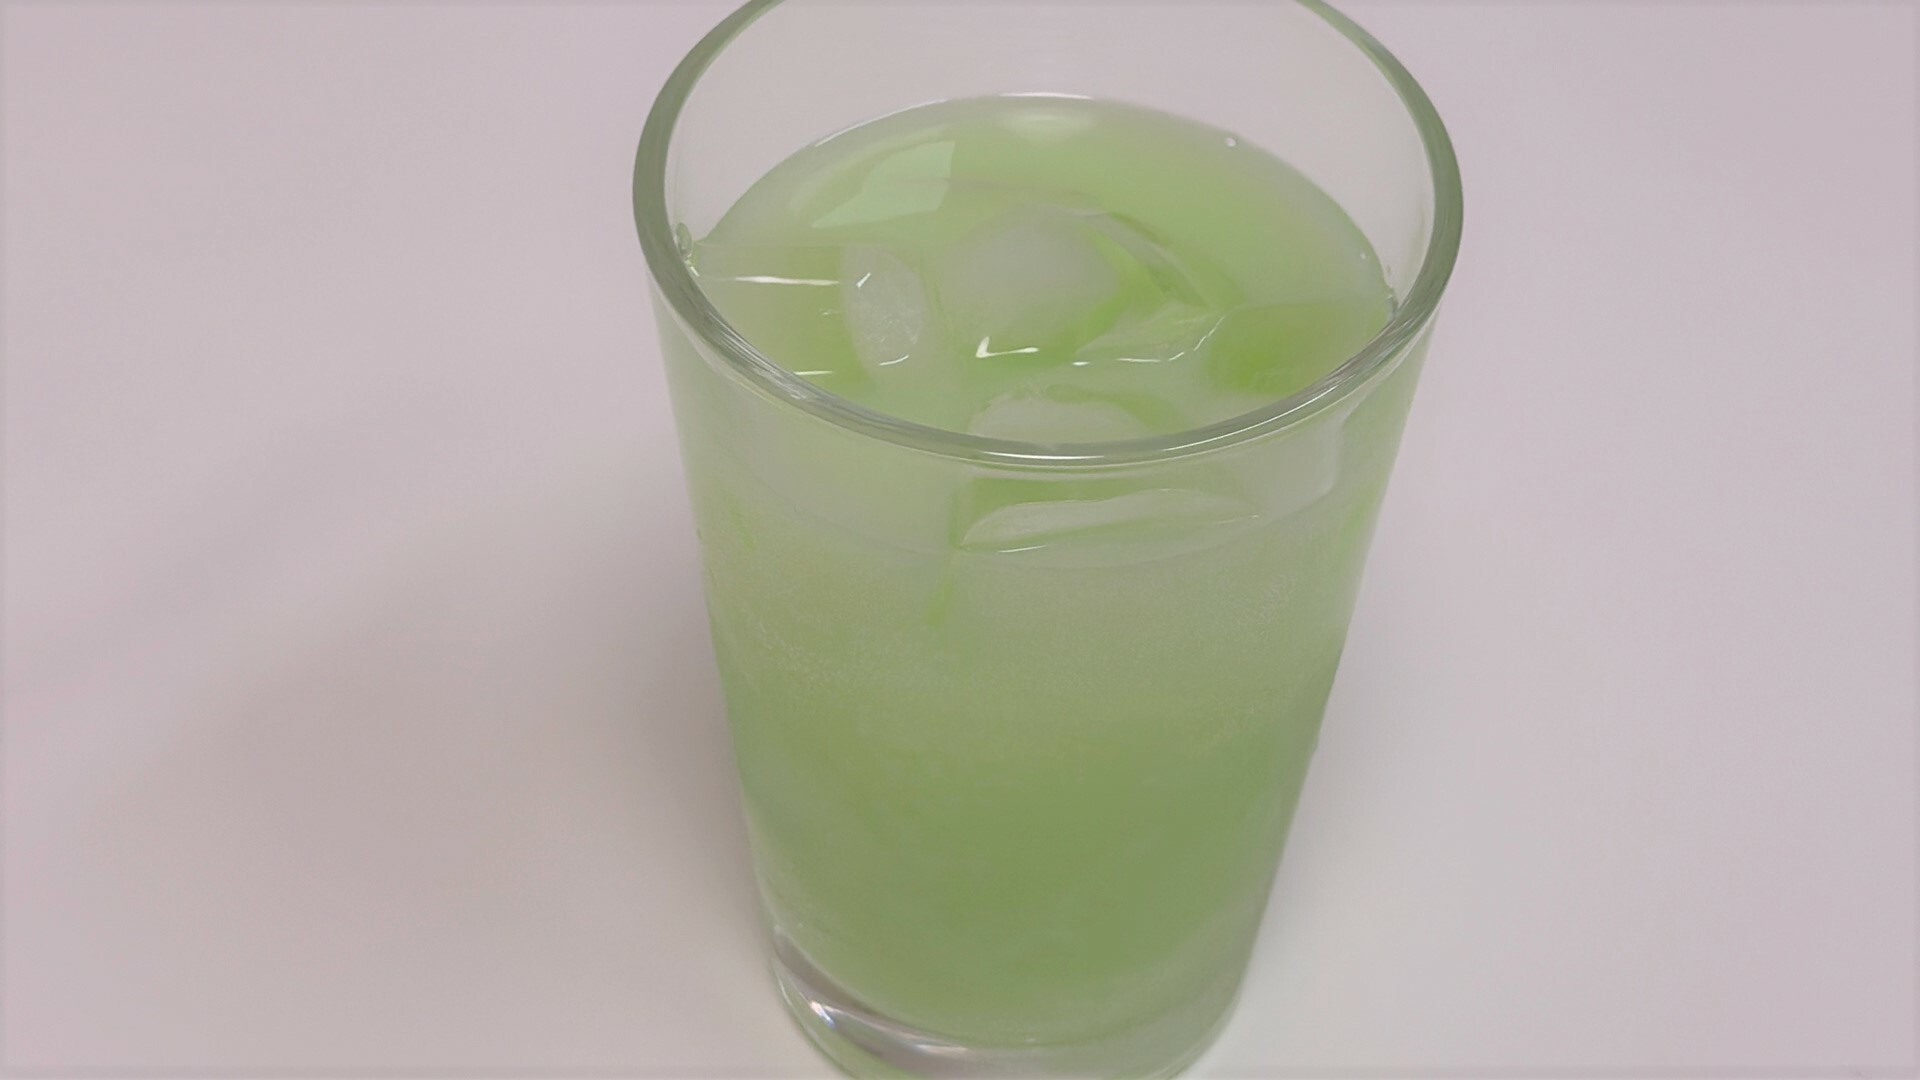 ファミマ限定のファンタパーラークリームソーダメロンは乳白色で淡い緑色